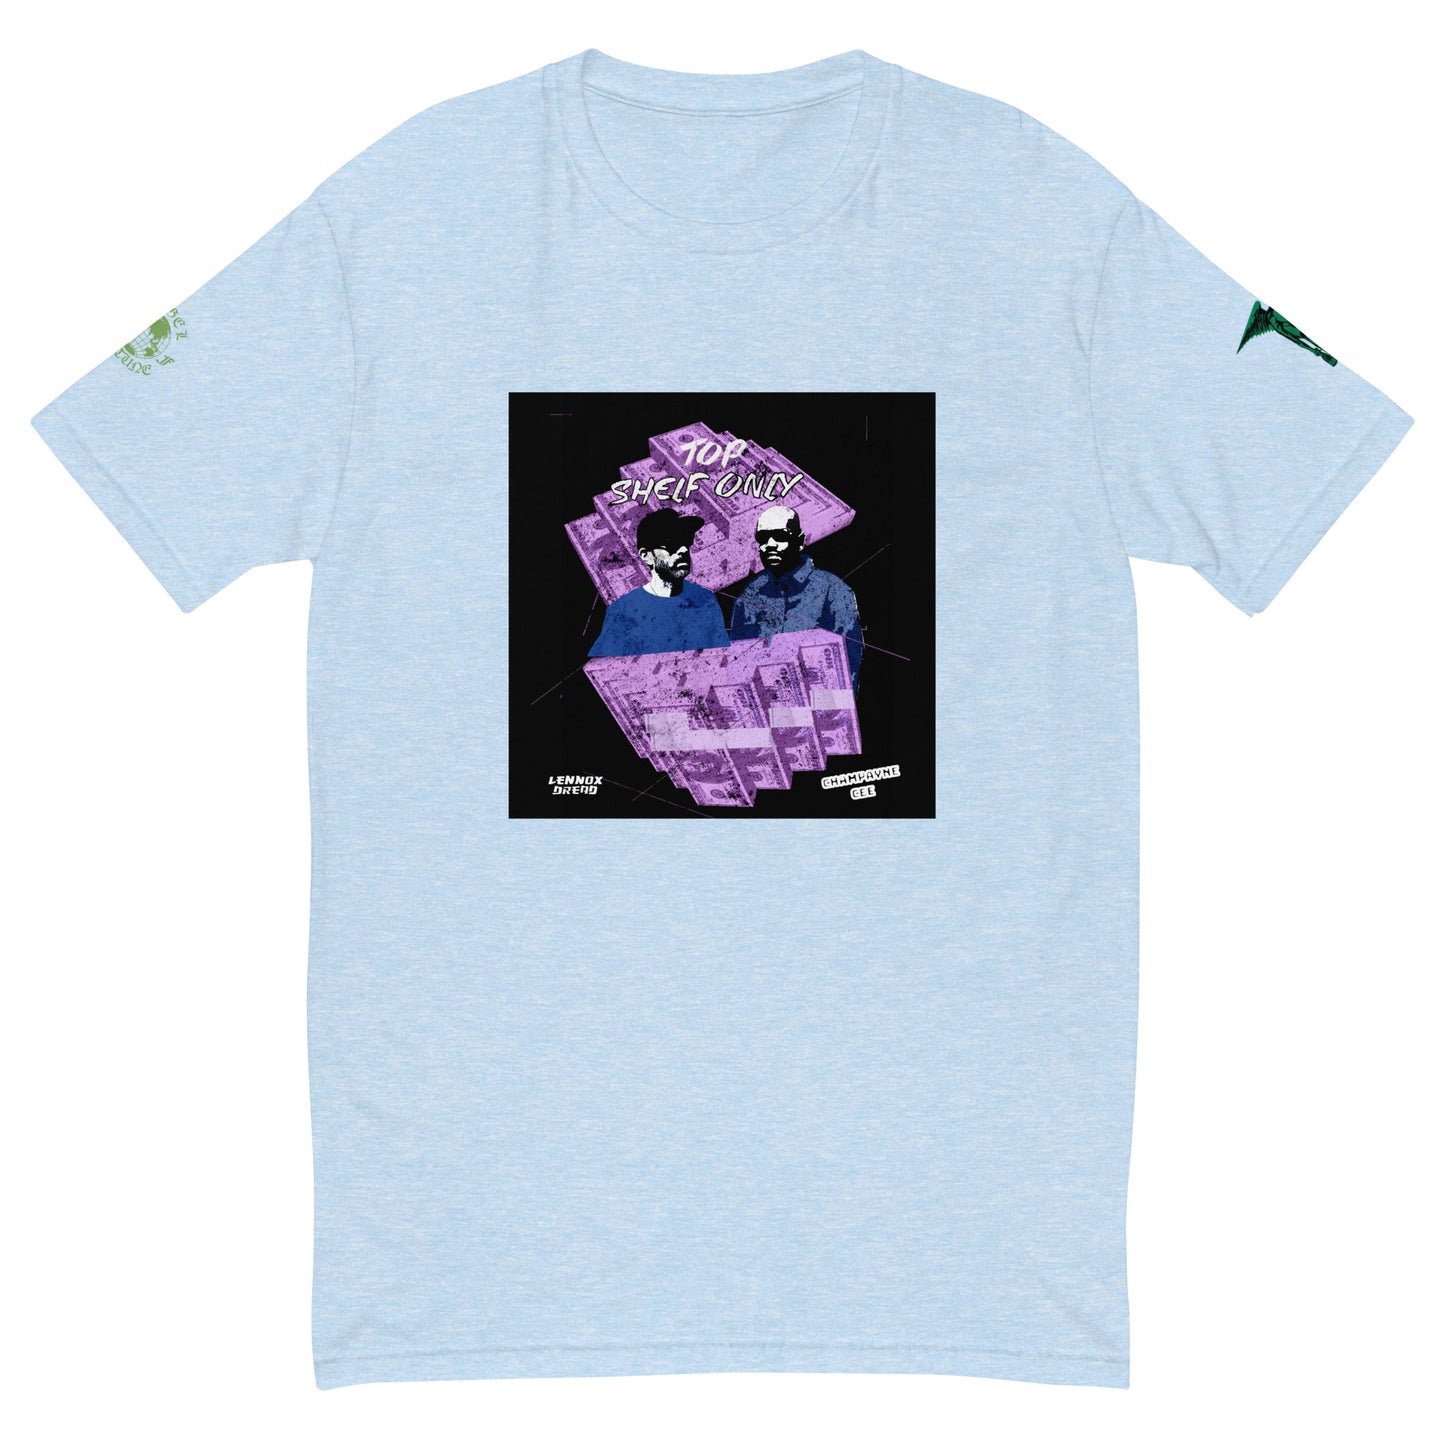 Top Shelf Only - Lennox & Cee- Short Sleeve T-shirt